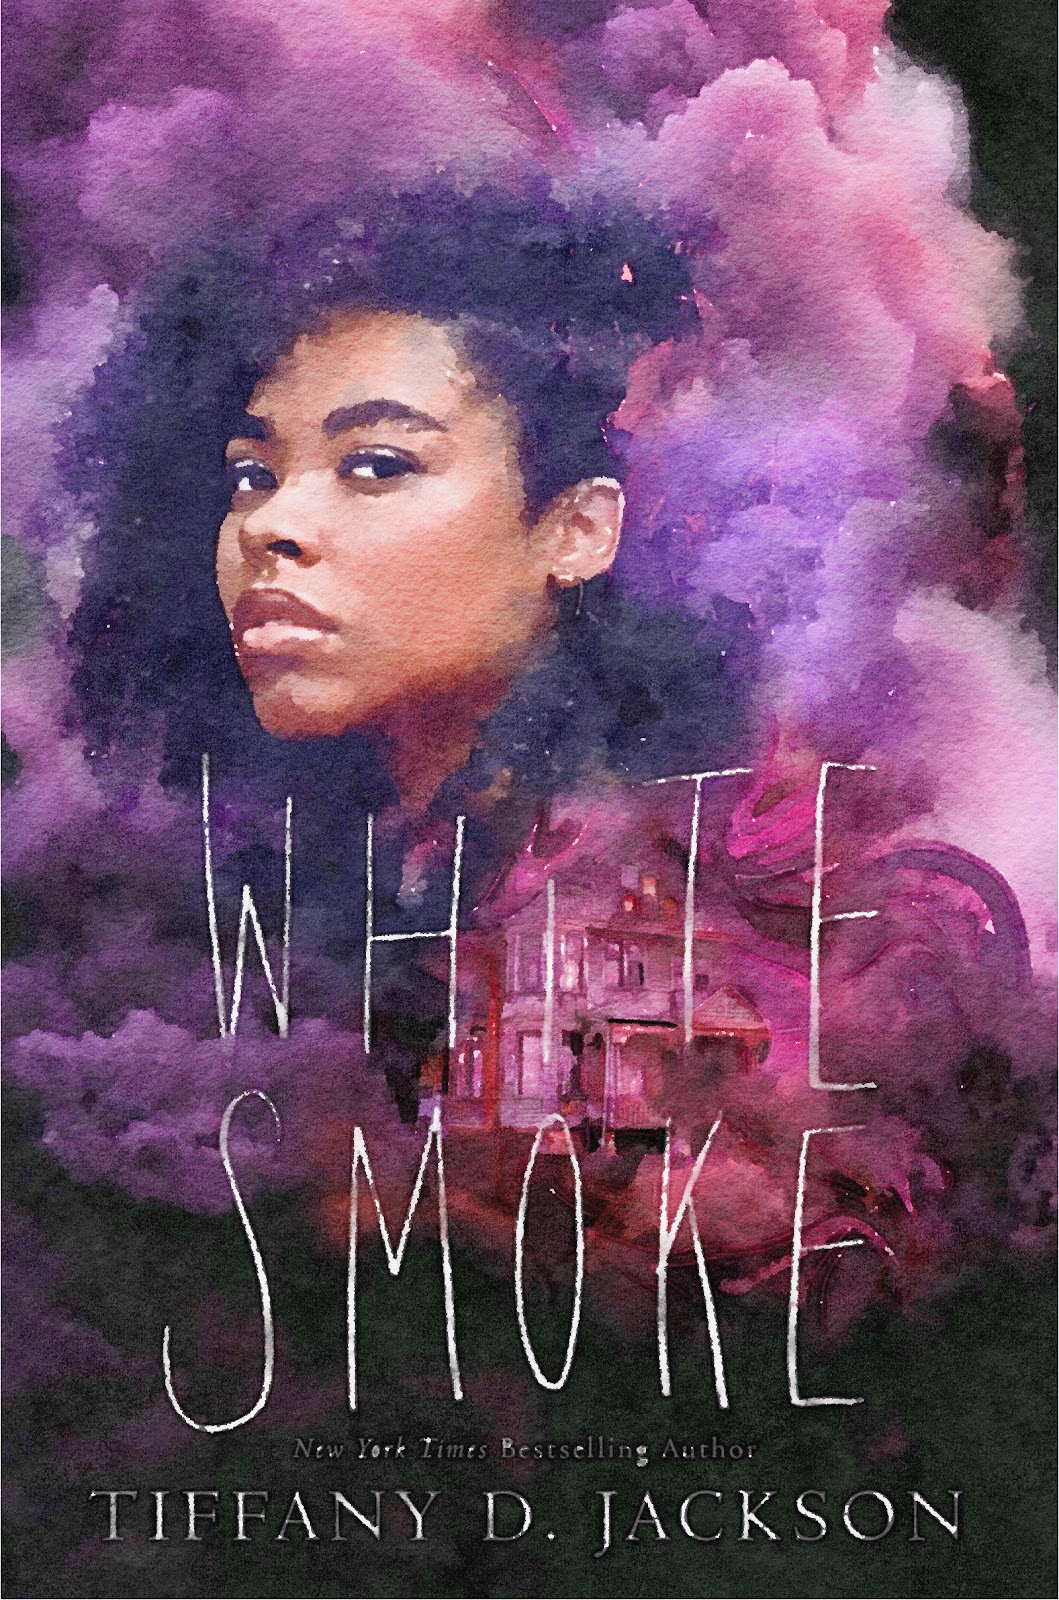 White Smoke